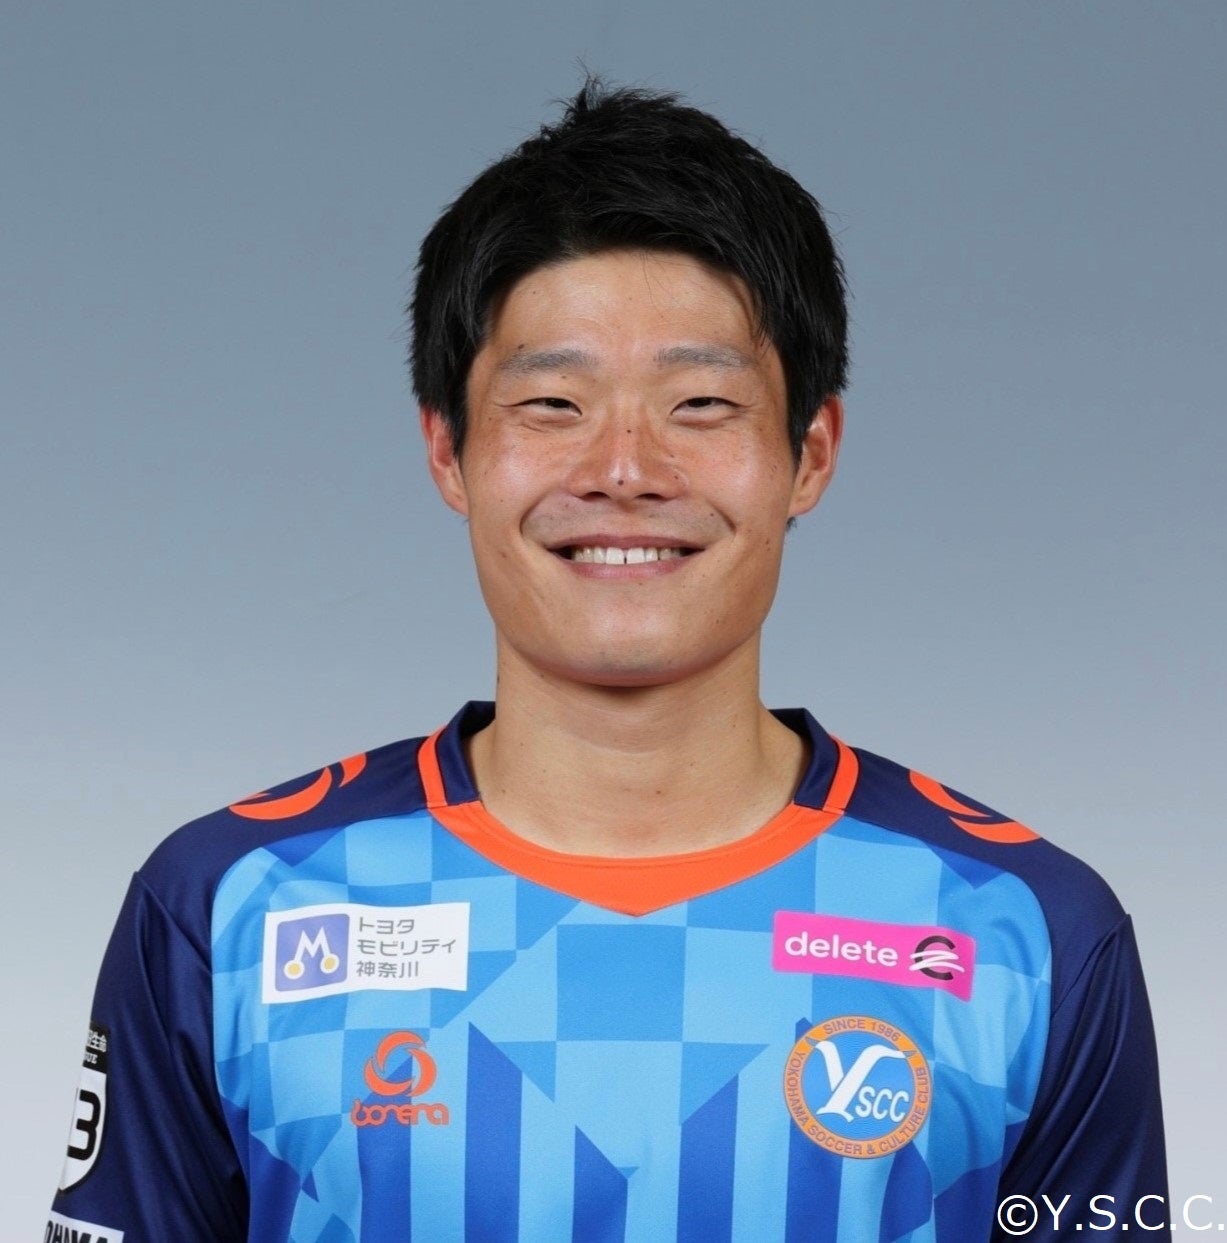 Y.S.C.C.横浜より 宗近 慧 選手完全移籍加入のお知らせ